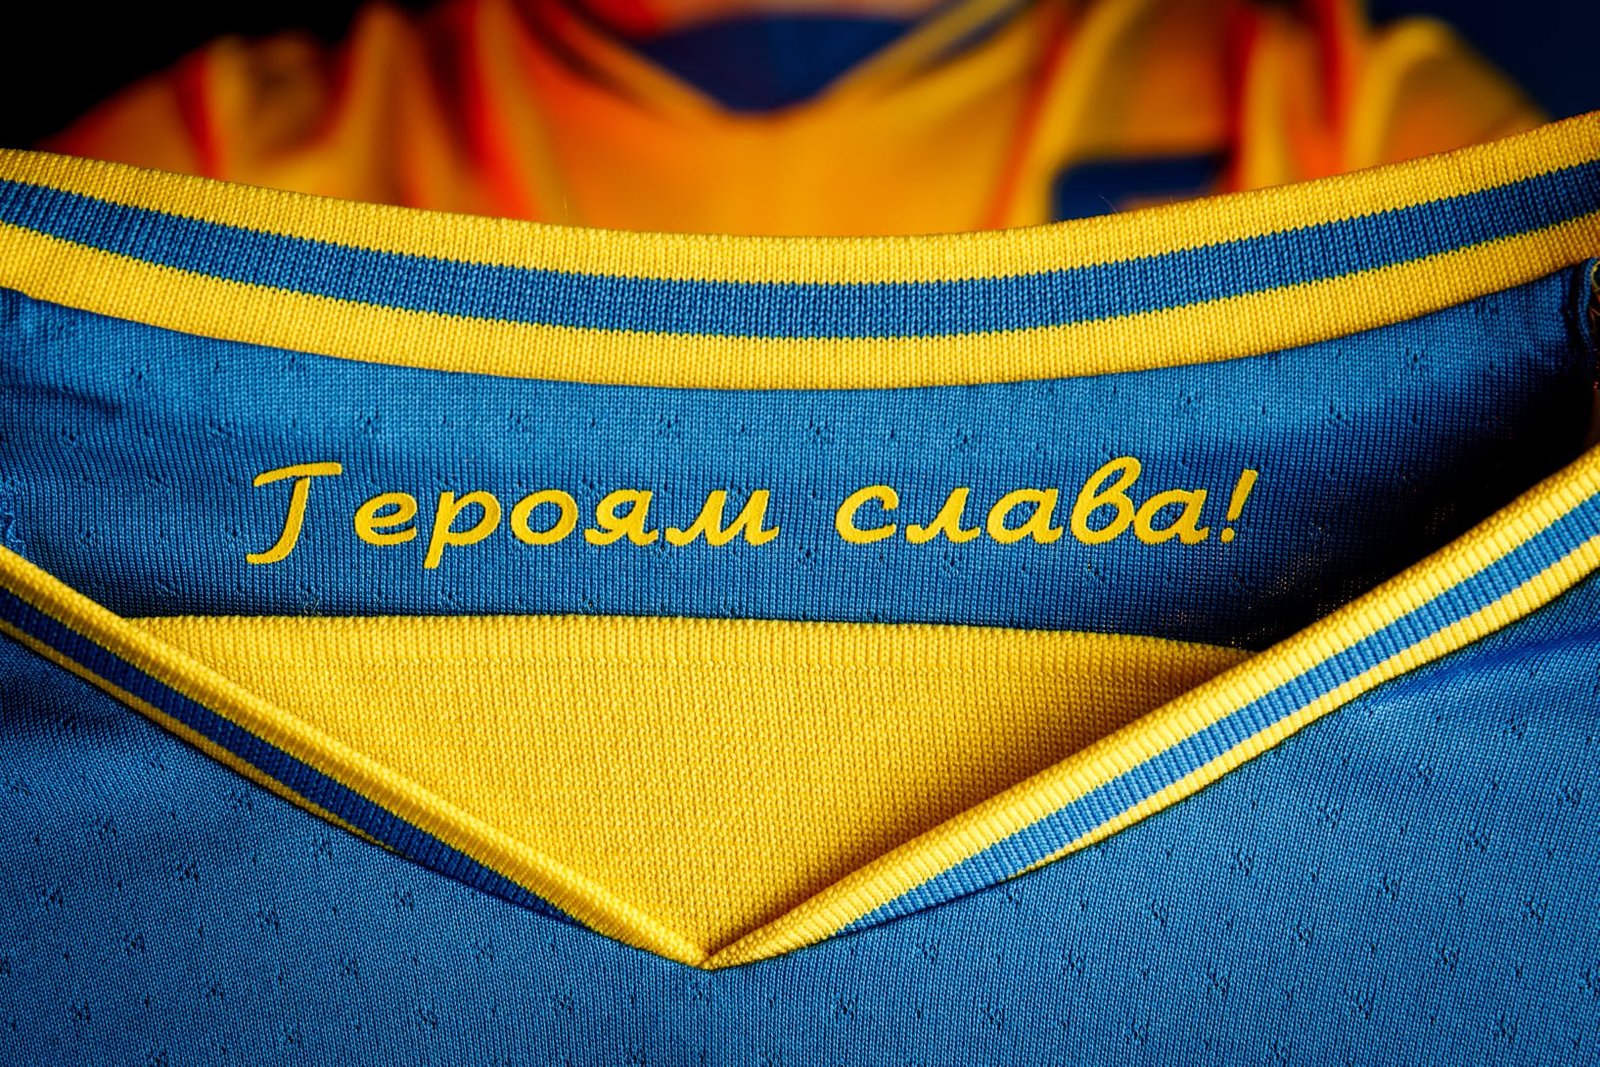 Павелко завершил переговоры с УЕФА: лозунг «Героям Слава!» оставят, но заклеят эмблемой